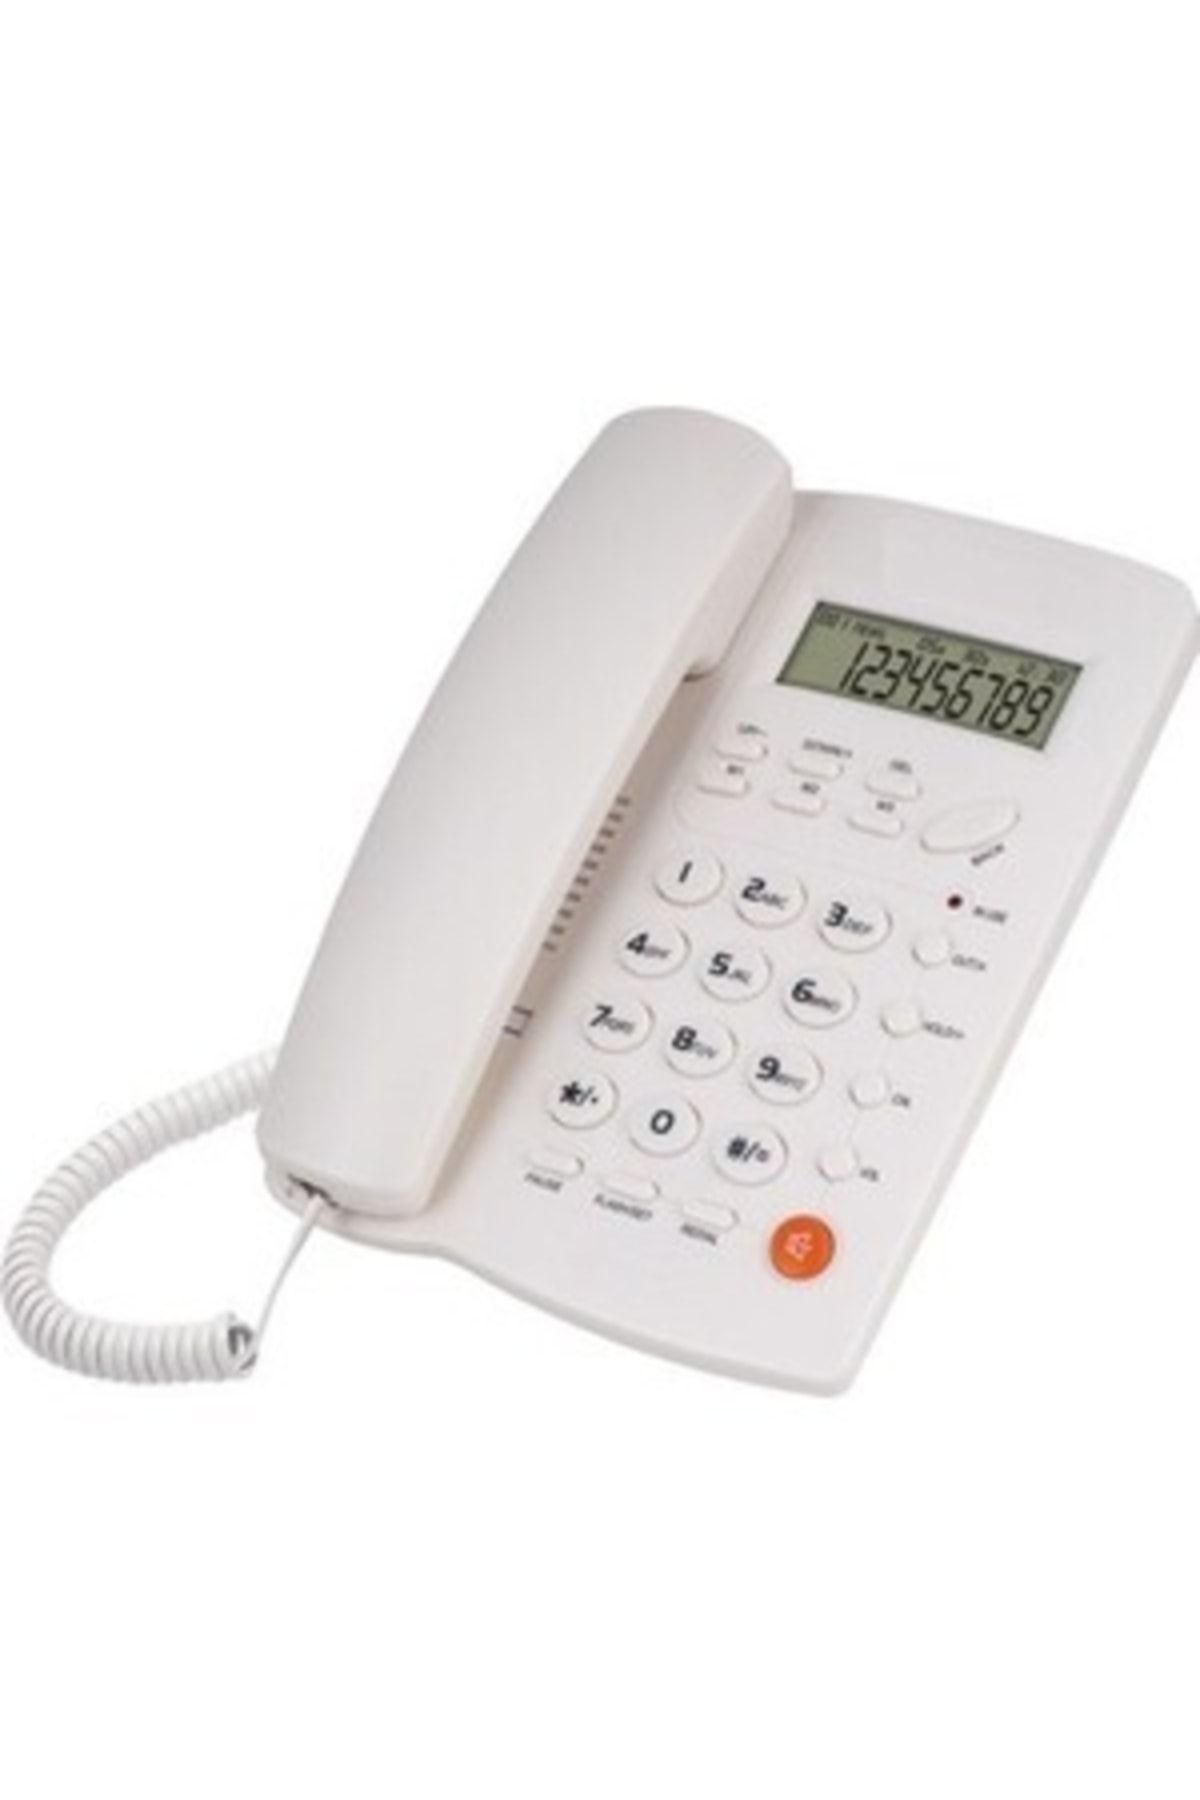 Genel Markalar Yt-03 Numarayı Gösteren Ev Telefonu